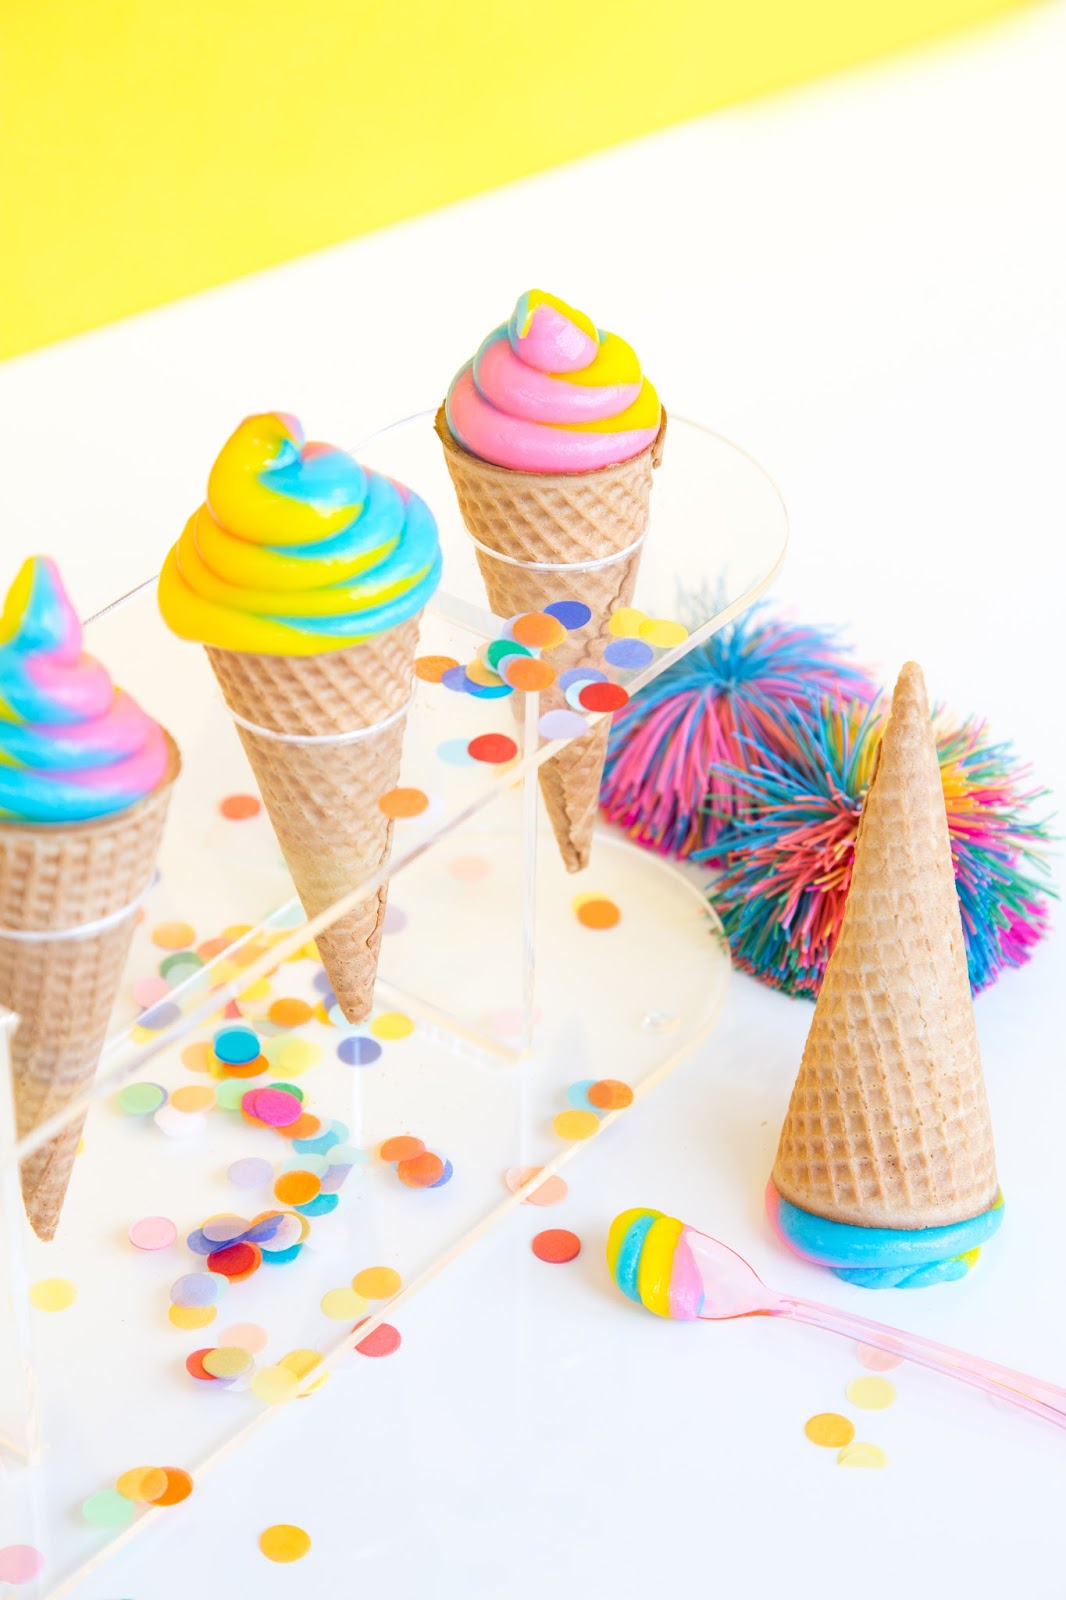 » How To Make Rainbow Swirl Ice Cream